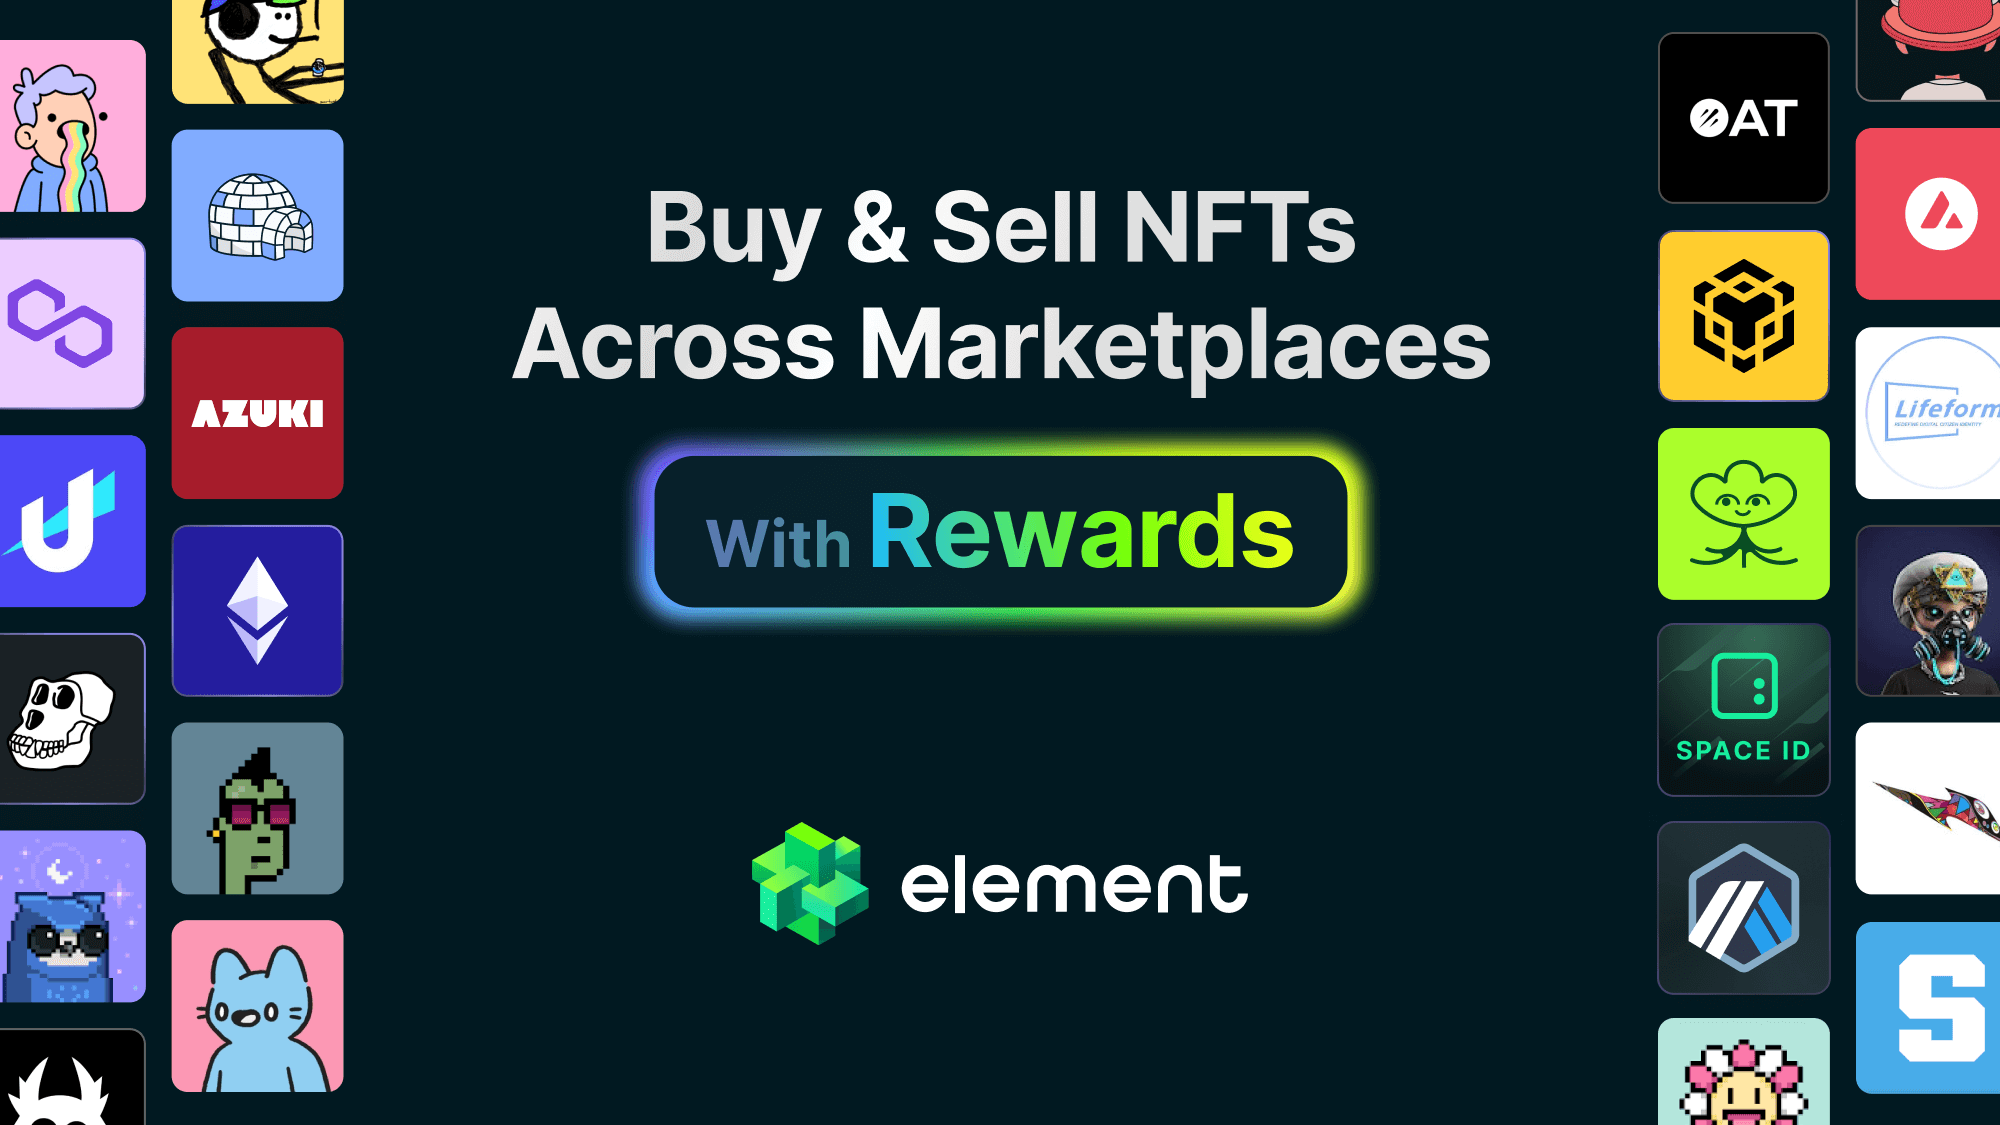 www.element.market